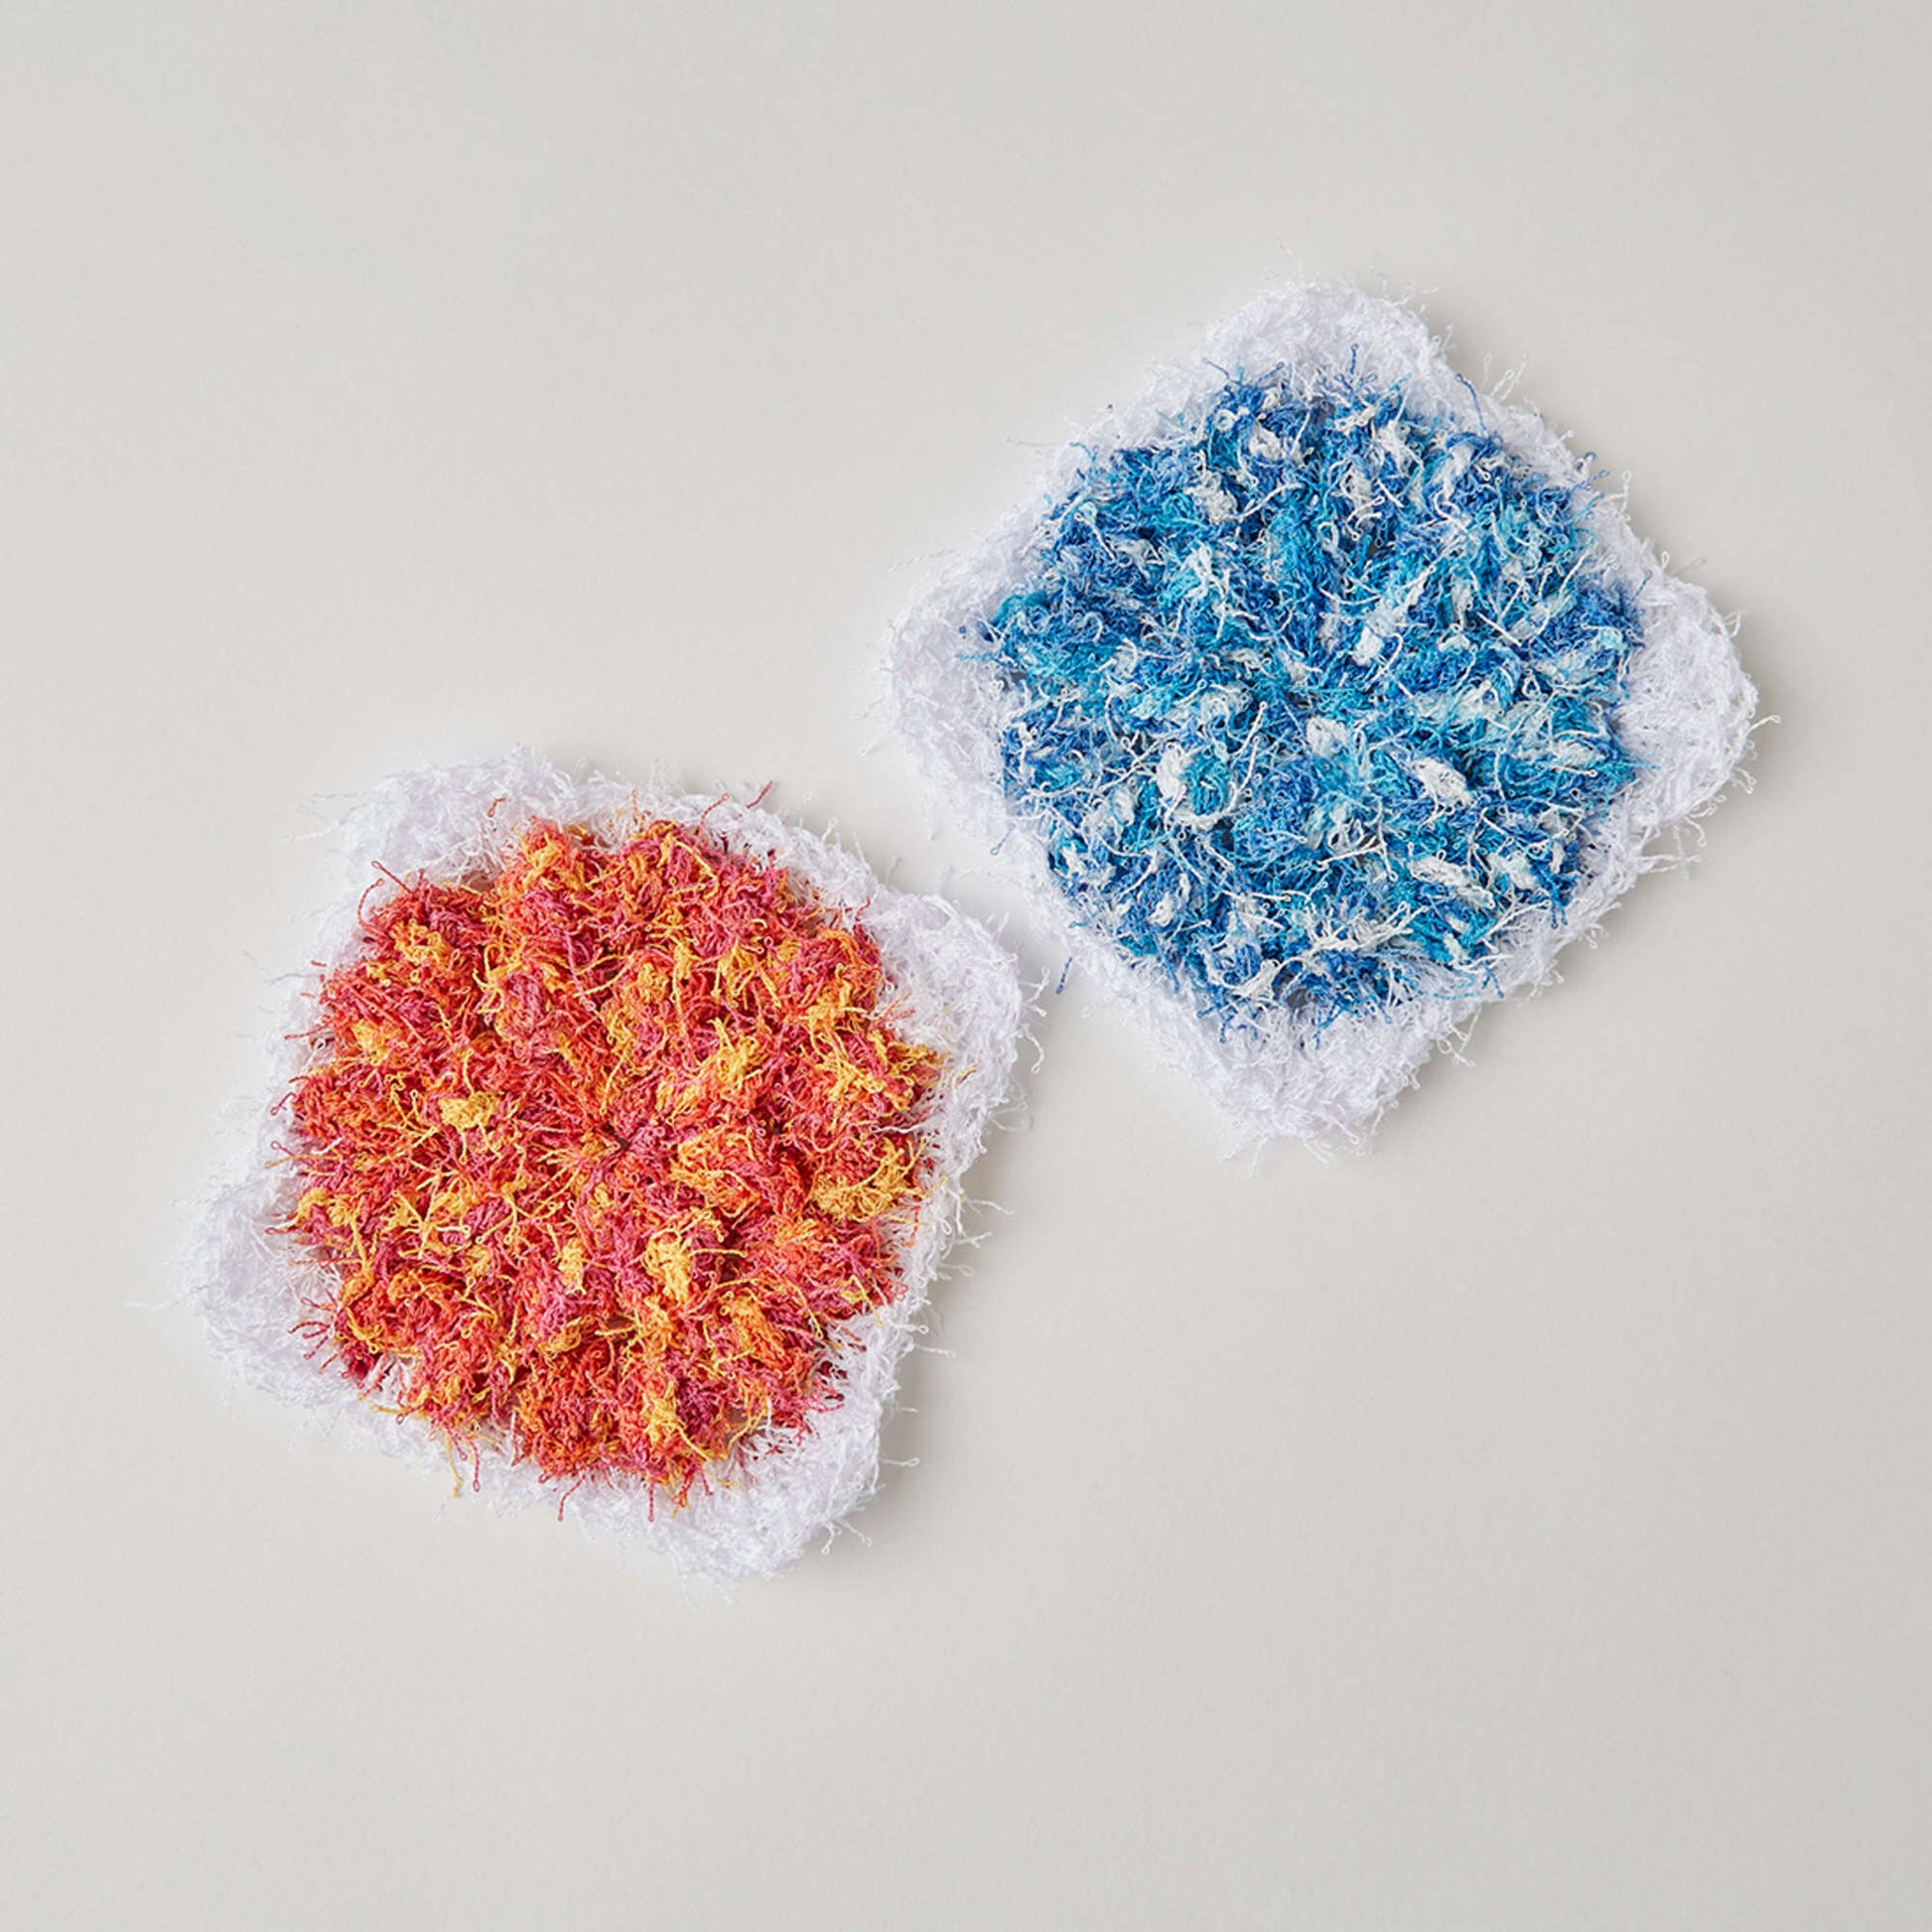 Free Red Heart Floral Popcorn Scrubby Crochet Pattern